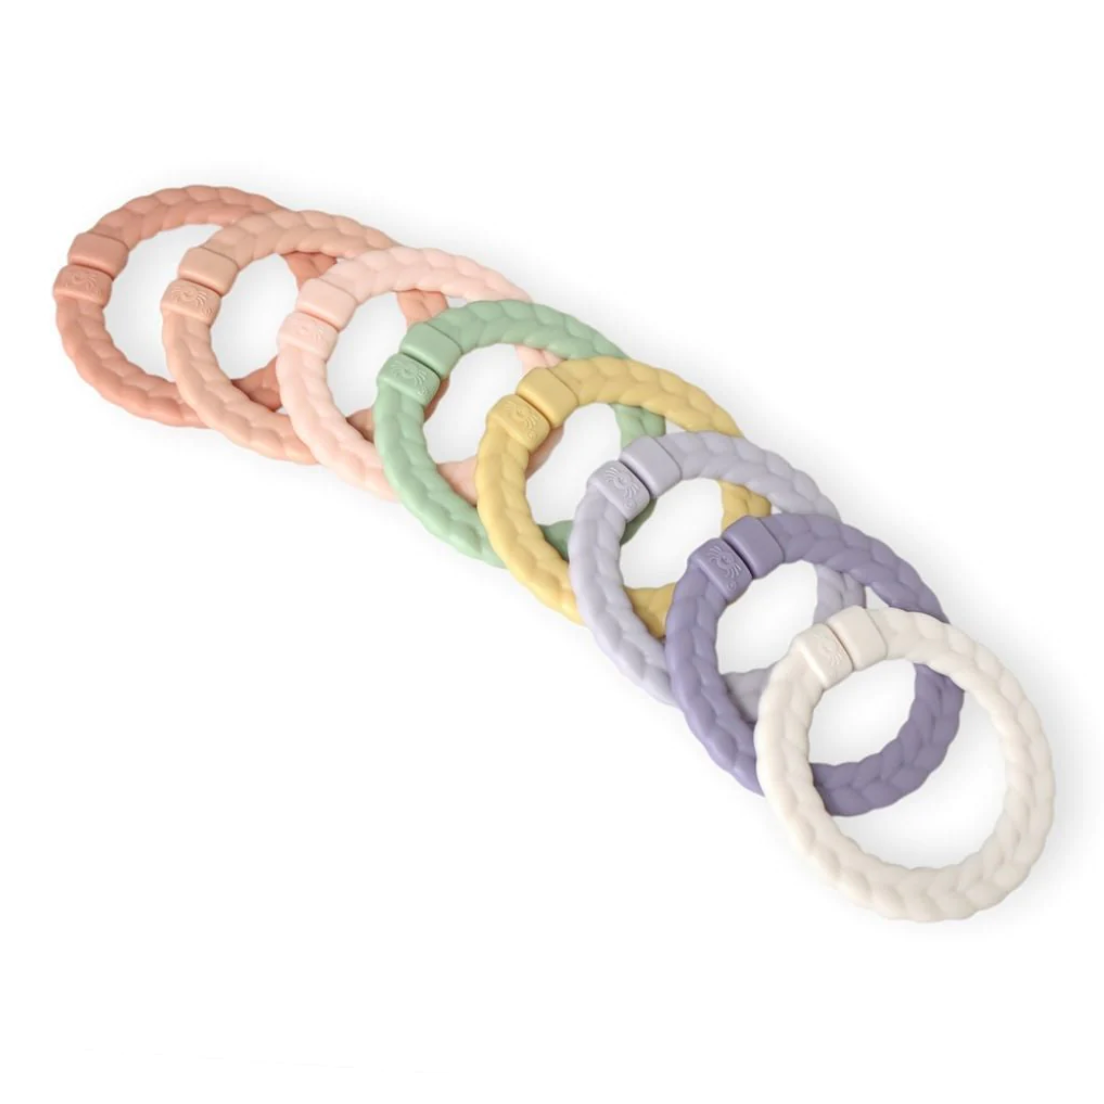 pastel linking ring set